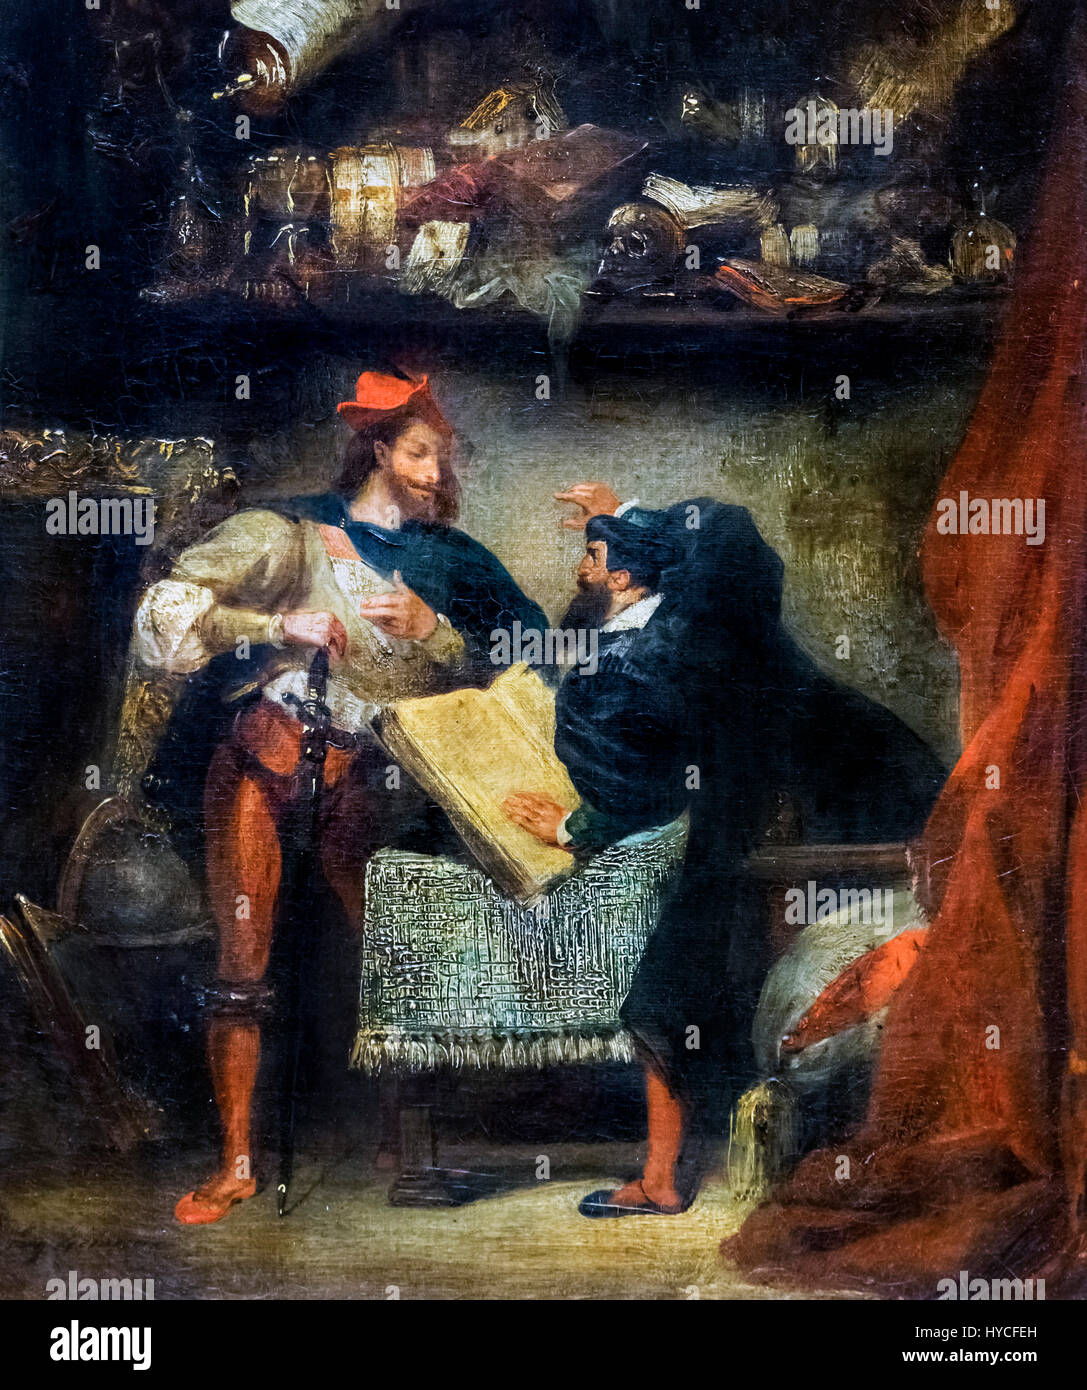 Faust et Méphistophélès par Eugène Delacroix, huile sur toile, c.1827-28 Banque D'Images